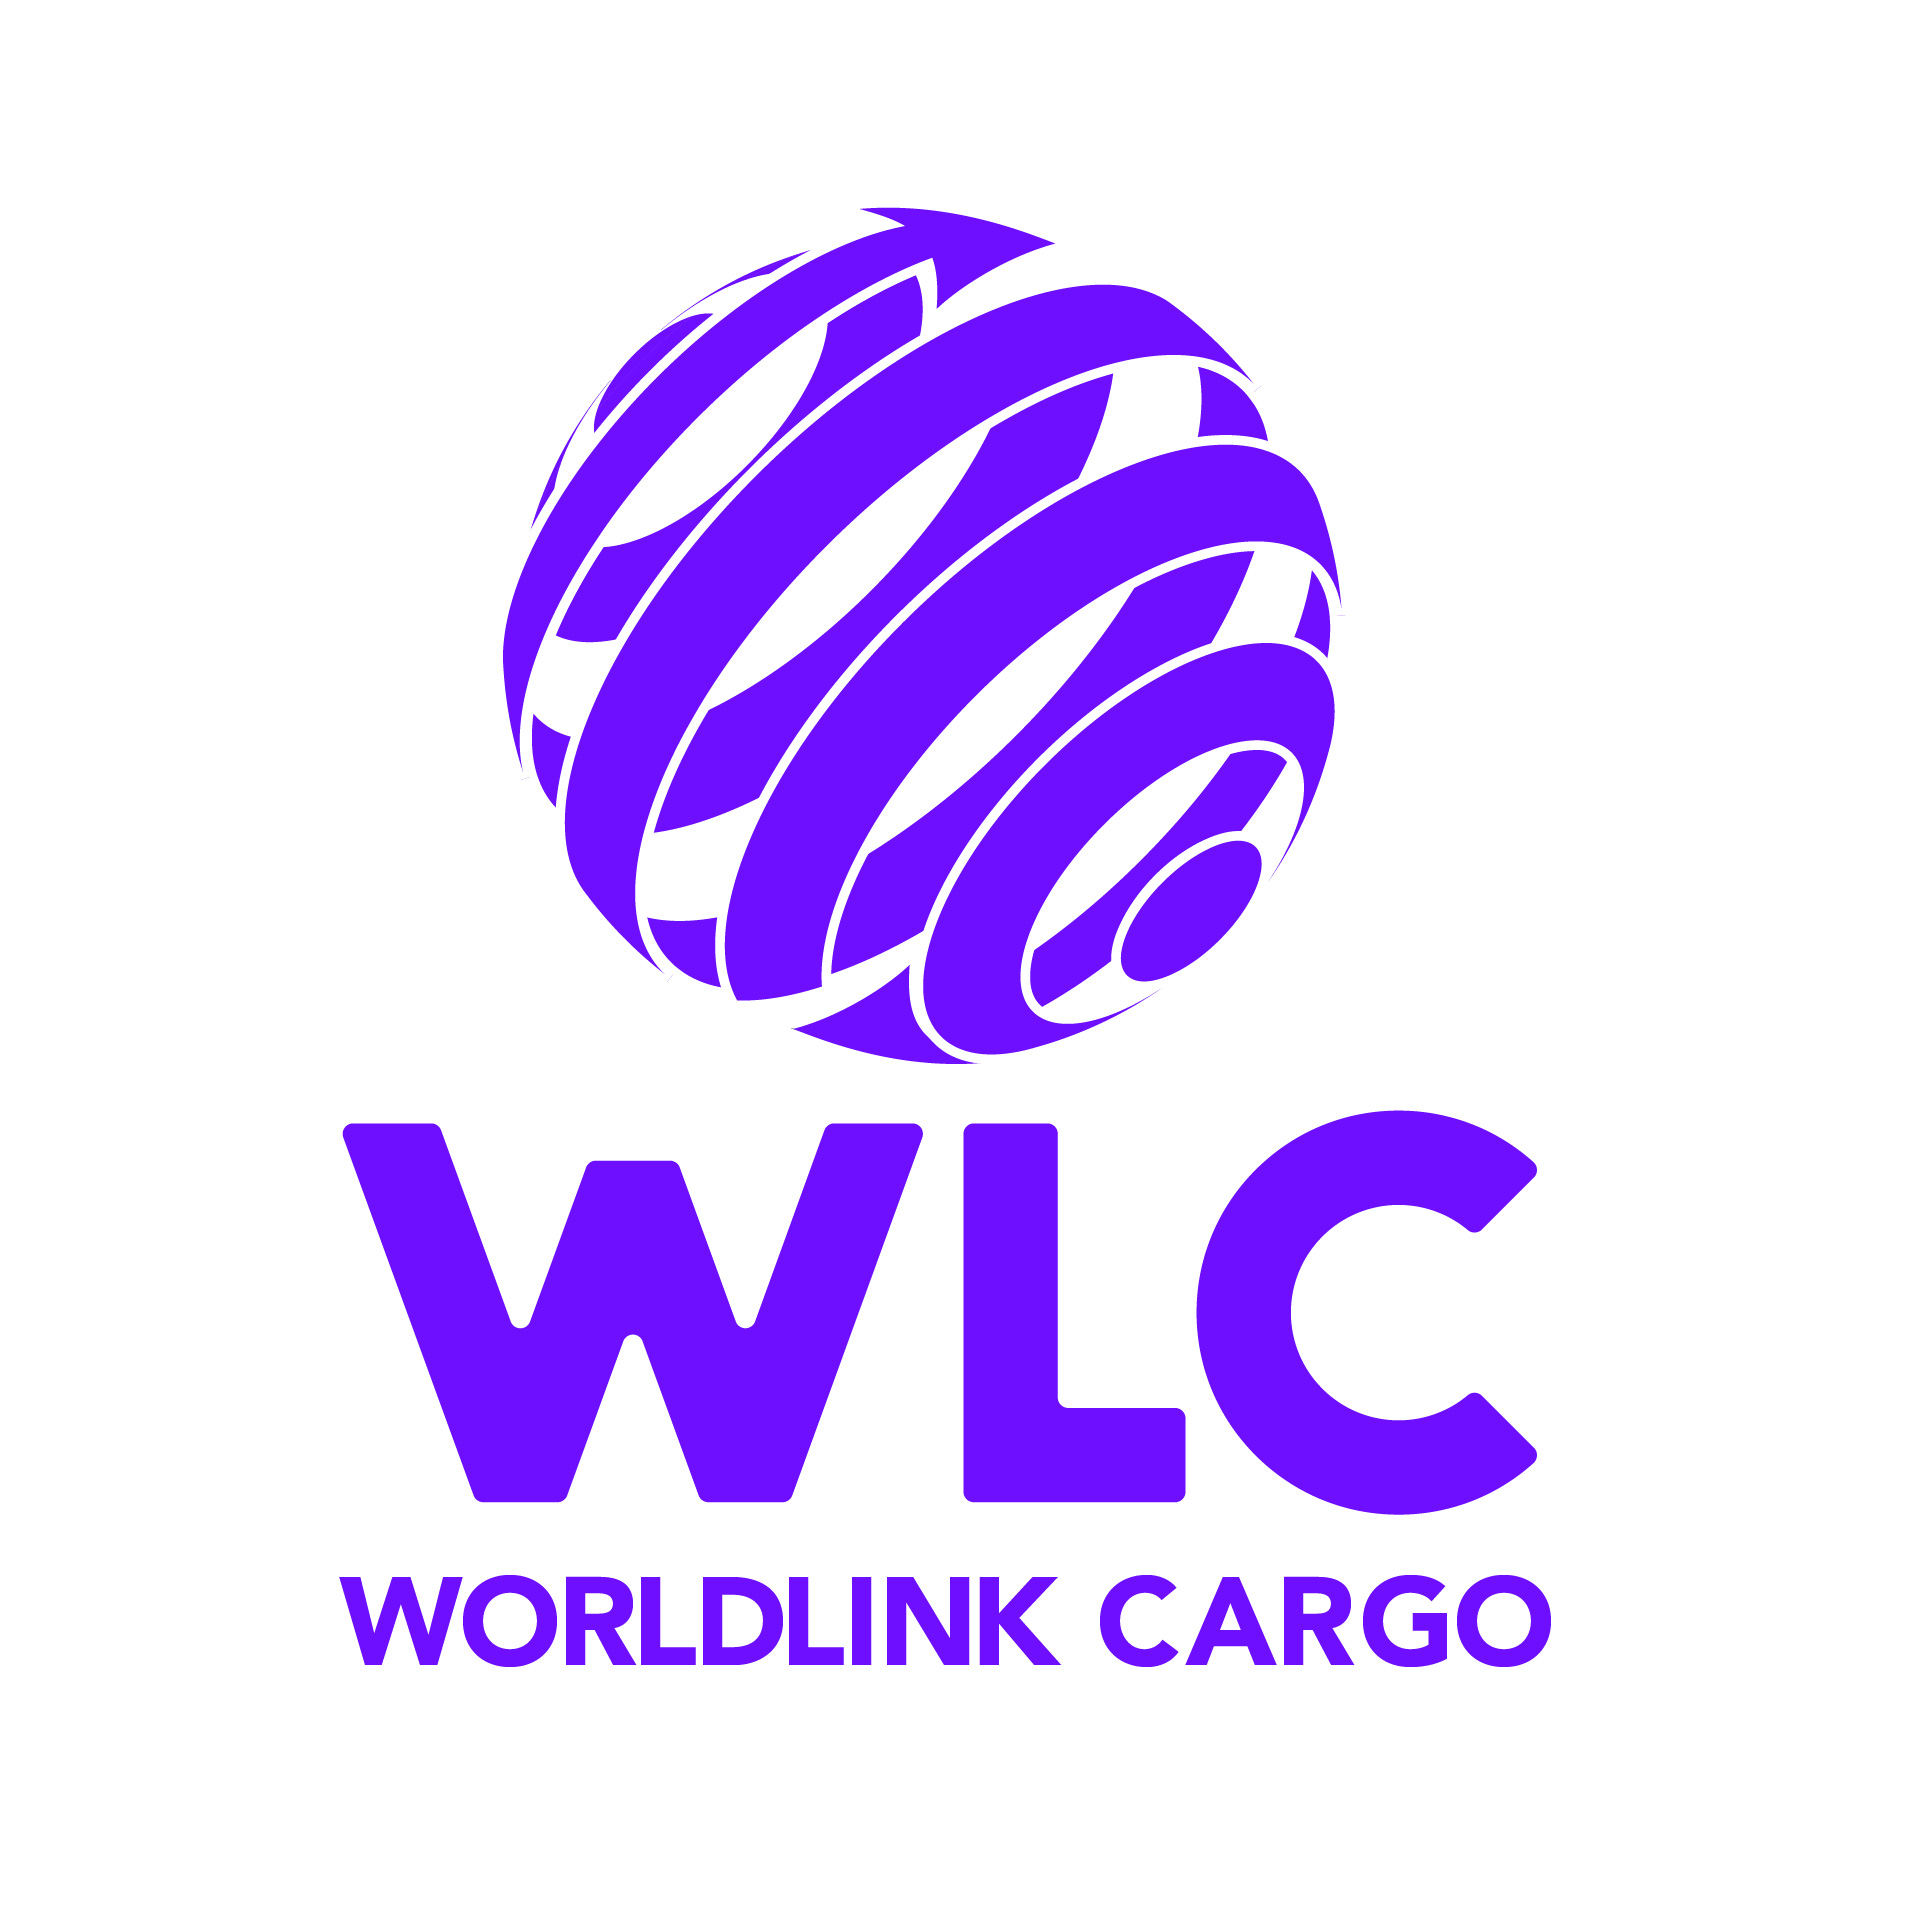 Diseño de Identidad Visual y Logotipo para la marca World Link Cargo